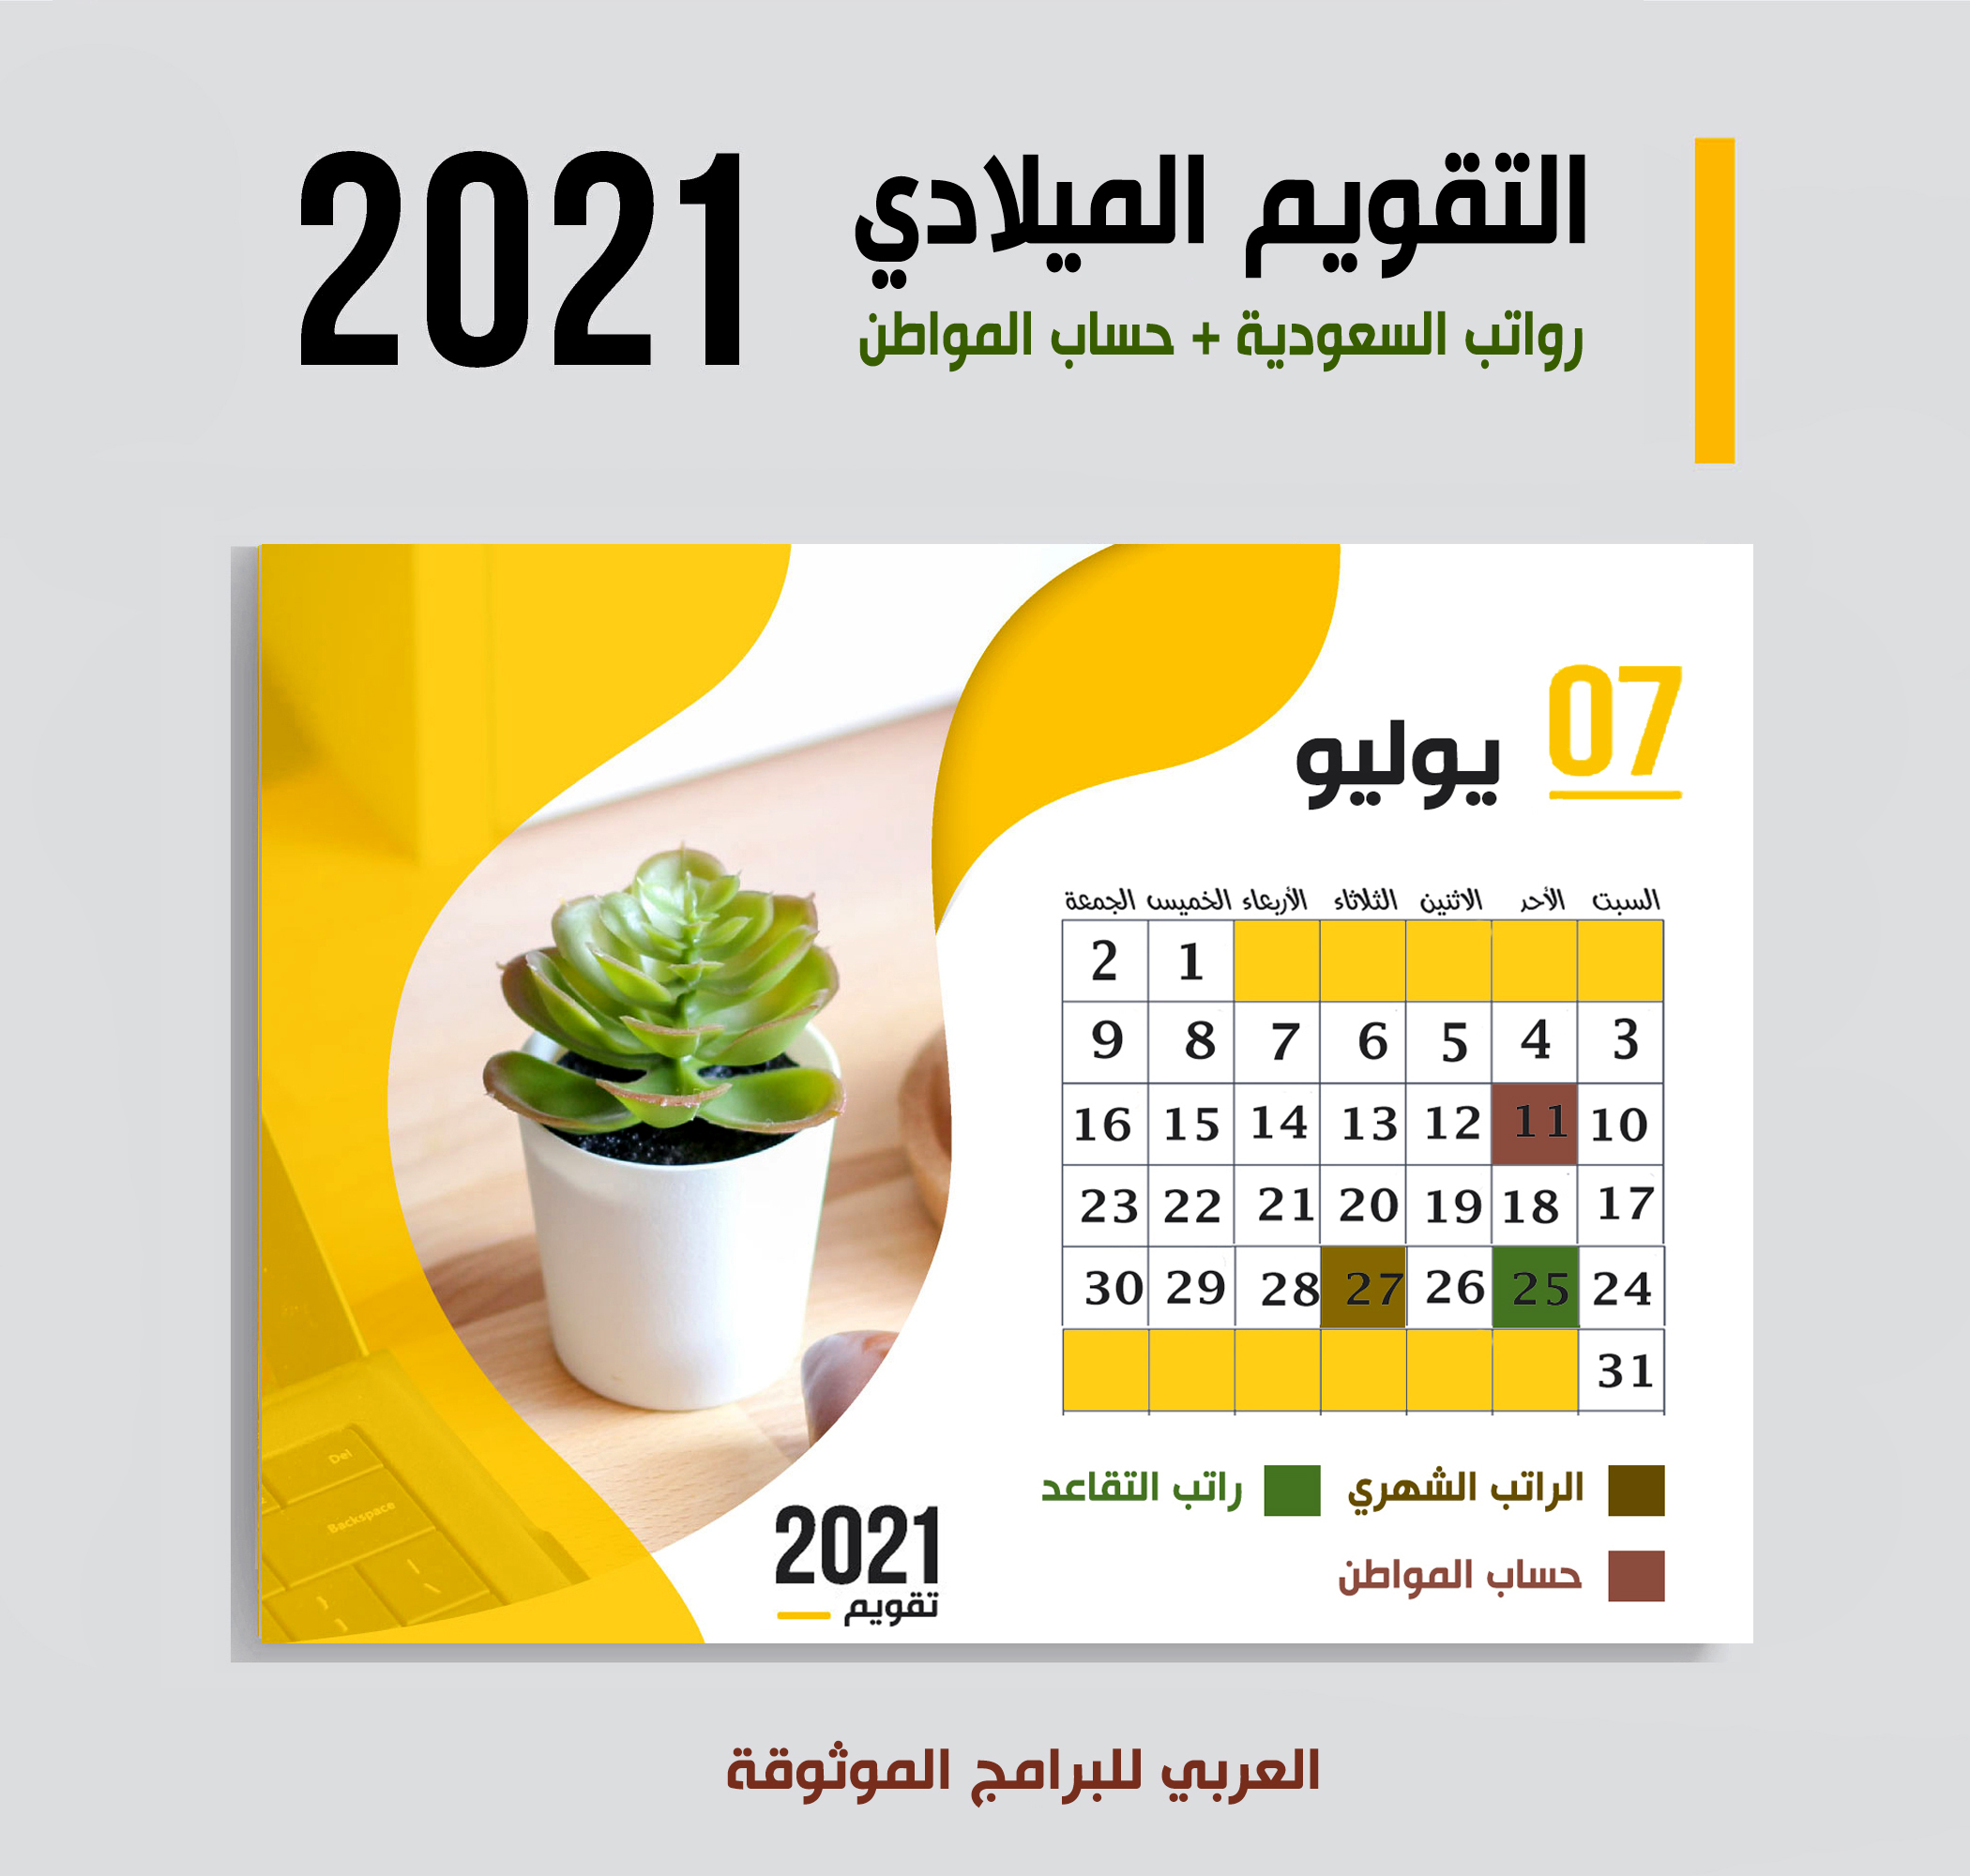 موعد صرف رواتب السعودية شهر يوليو 2021 موعد حساب المواطن + رواتب المتقاعدين